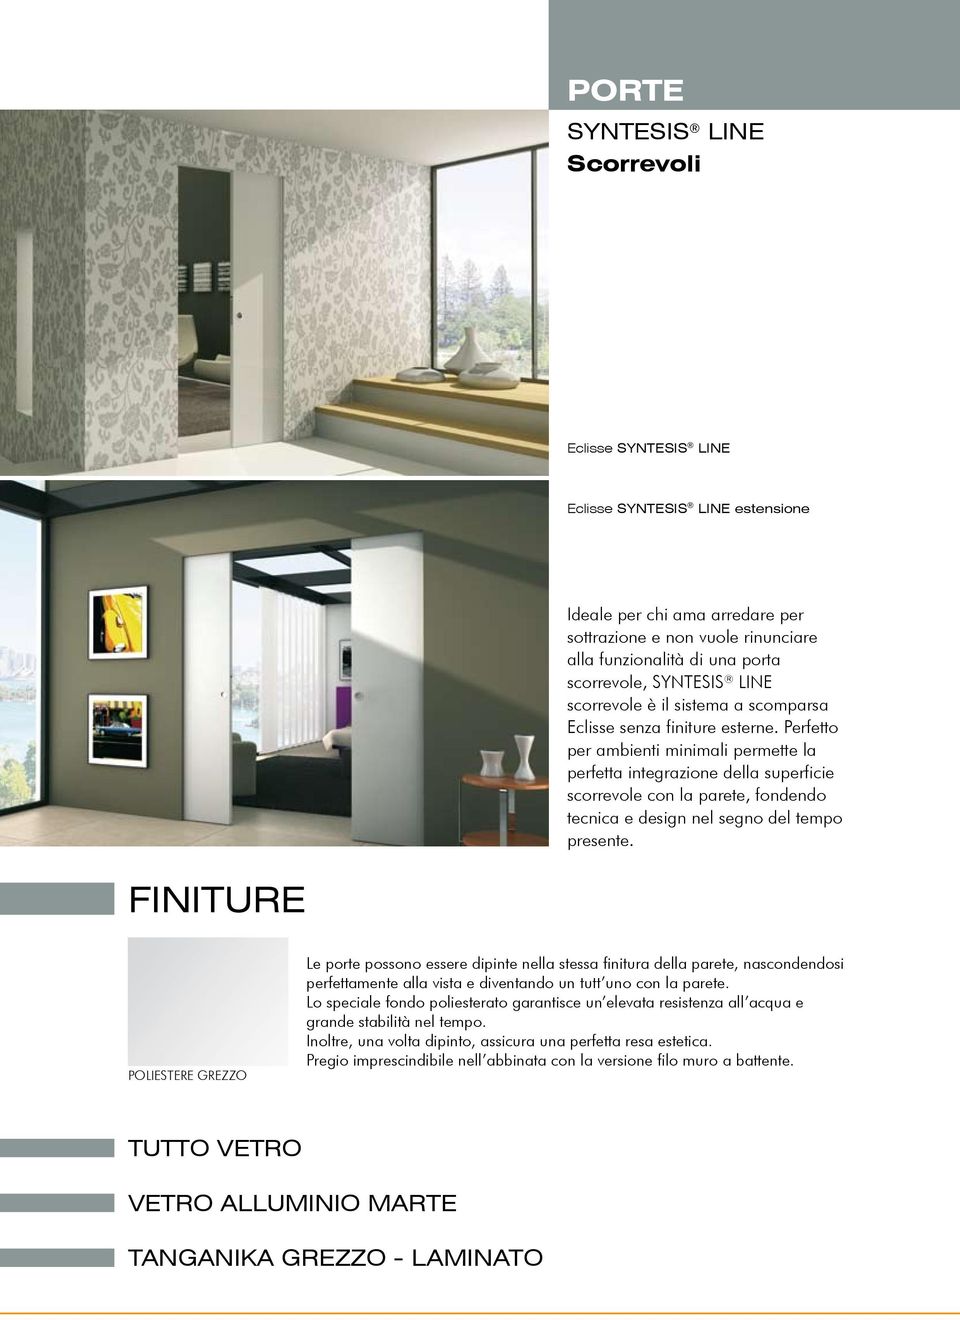 Perfetto per ambienti minimali permette la perfetta integrazione della superficie scorrevole con la parete, fondendo tecnica e design nel segno del tempo presente.